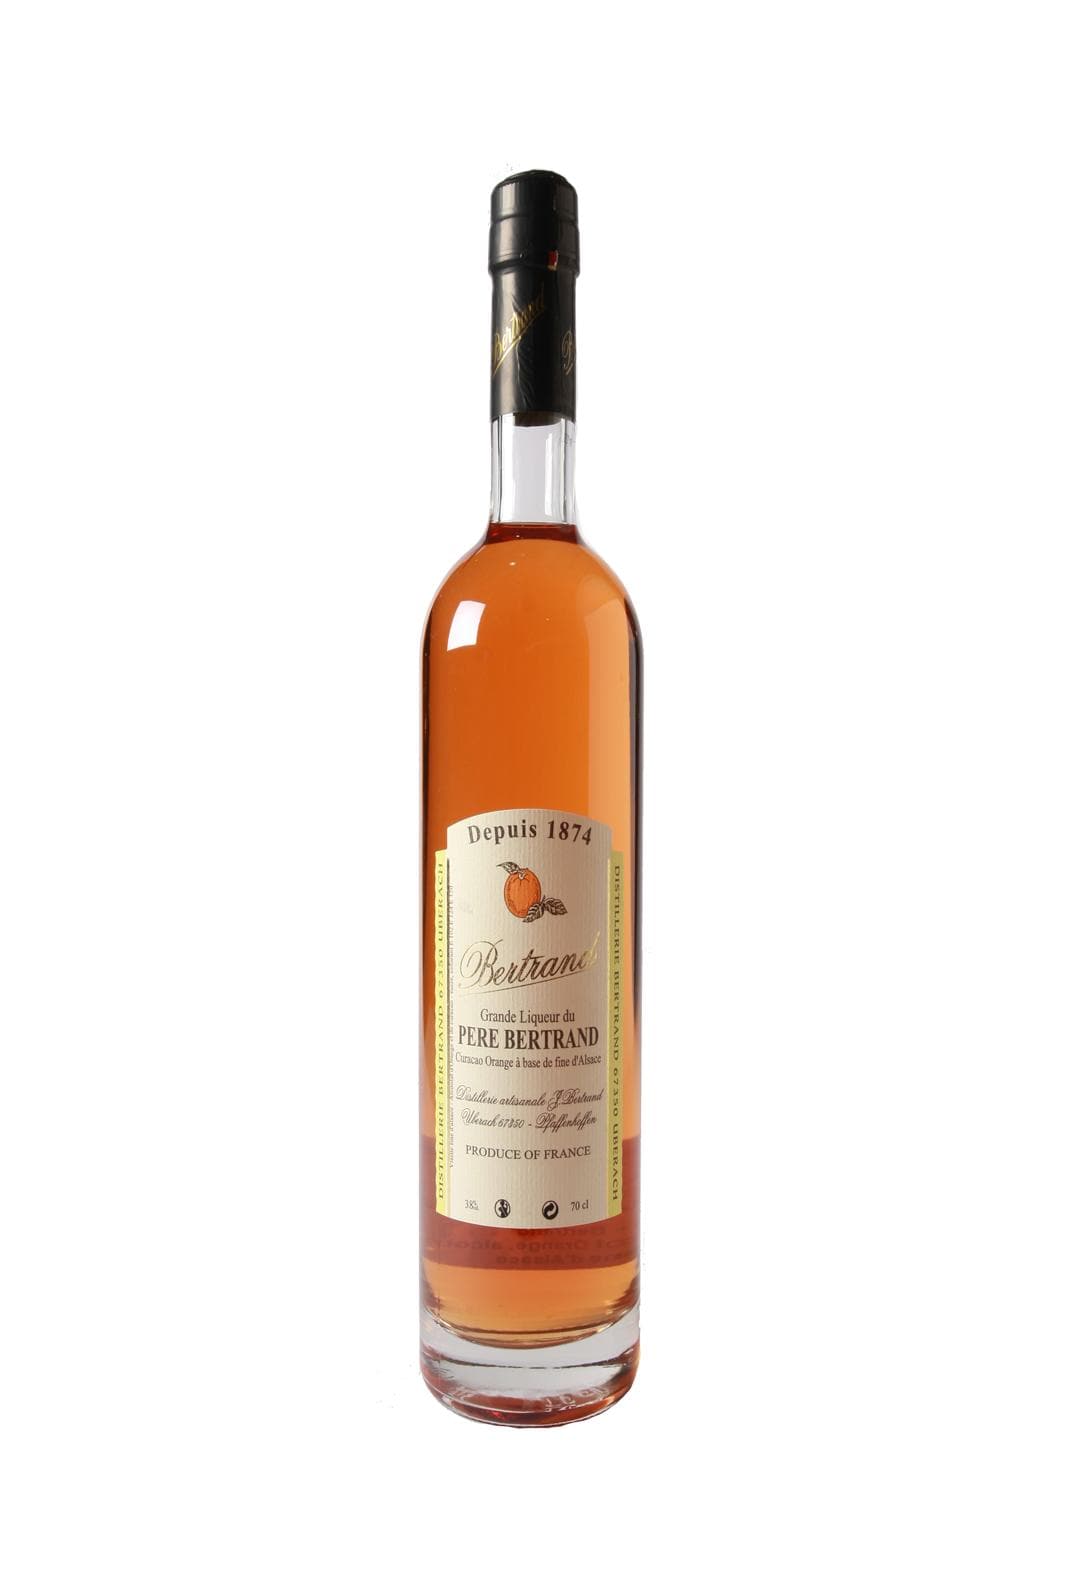 Bertrand Liqueur 'Pere Bertrnad' Orange Curacao 38% 700ml | Liqueurs | Shop online at Spirits of France